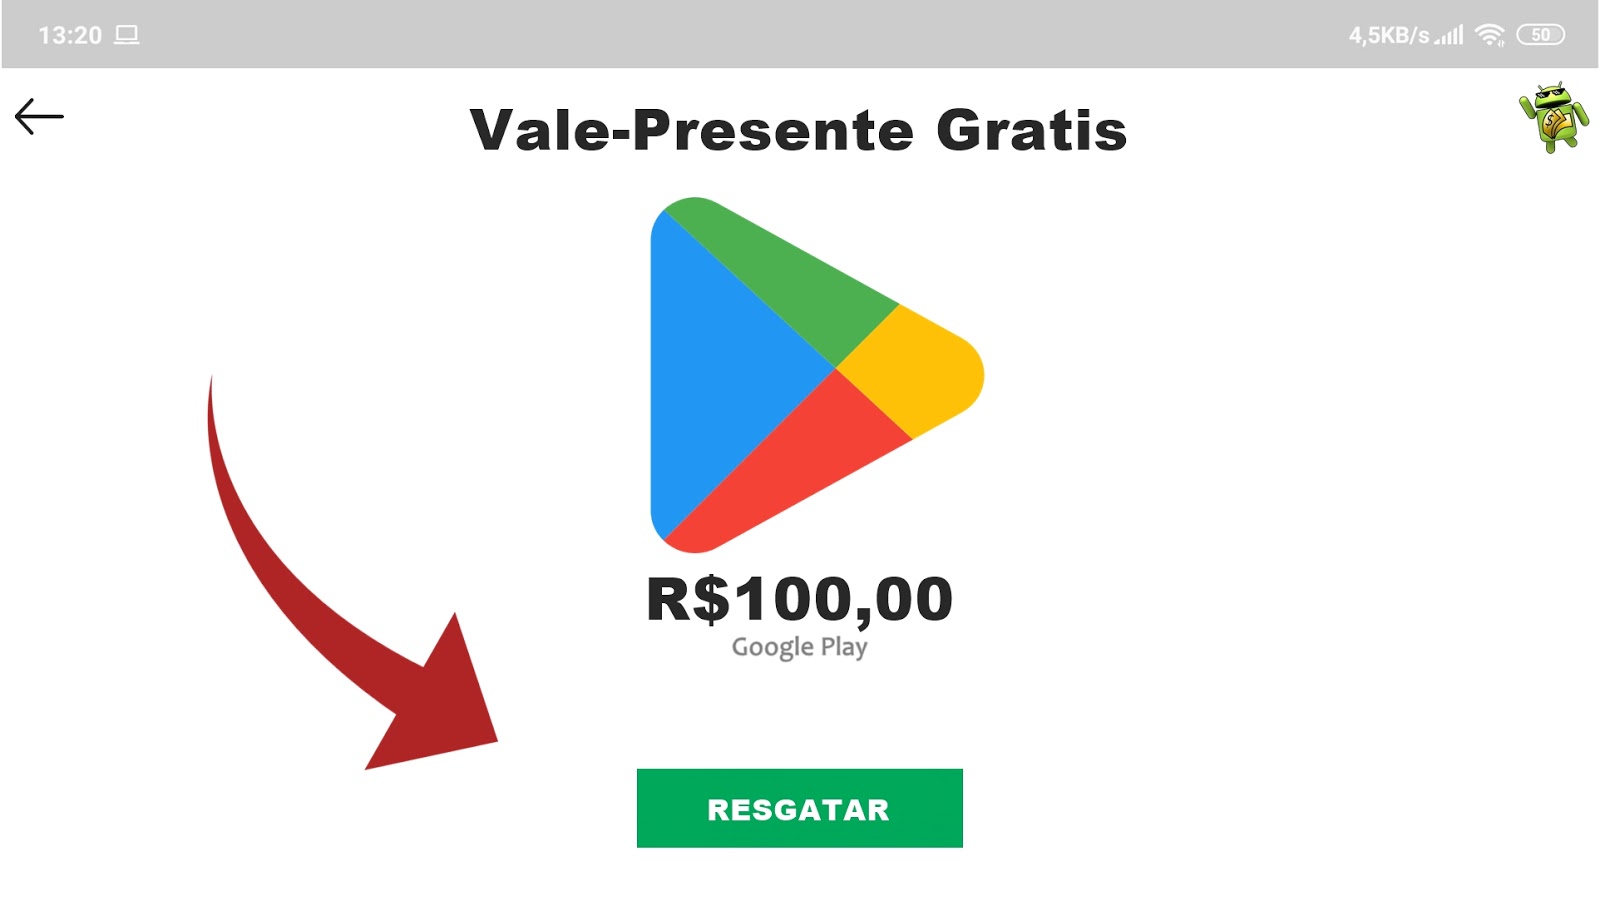 AppNana - Vales-presente – Apps no Google Play